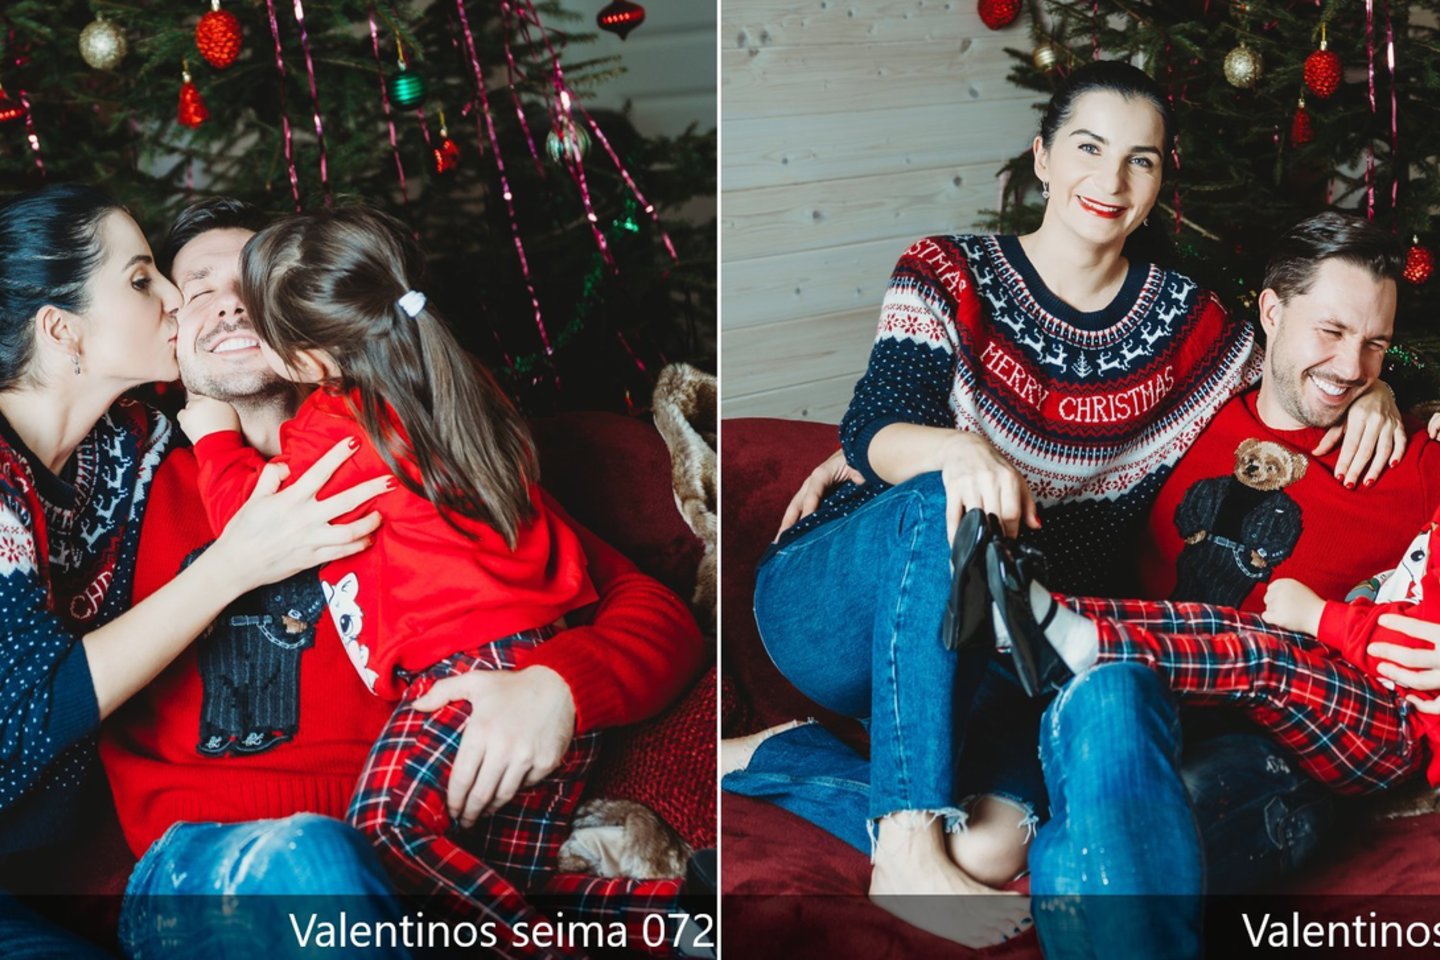 Medikai Valentina ir Vytautas Kvaraciejai kalėdines fotosesijas pradėjo rengti gimus dukrai Sofijai, nuotraukos atspindi, kiek ji kasmet paaugo.<br> Nuotr. iš asmeninio albumo